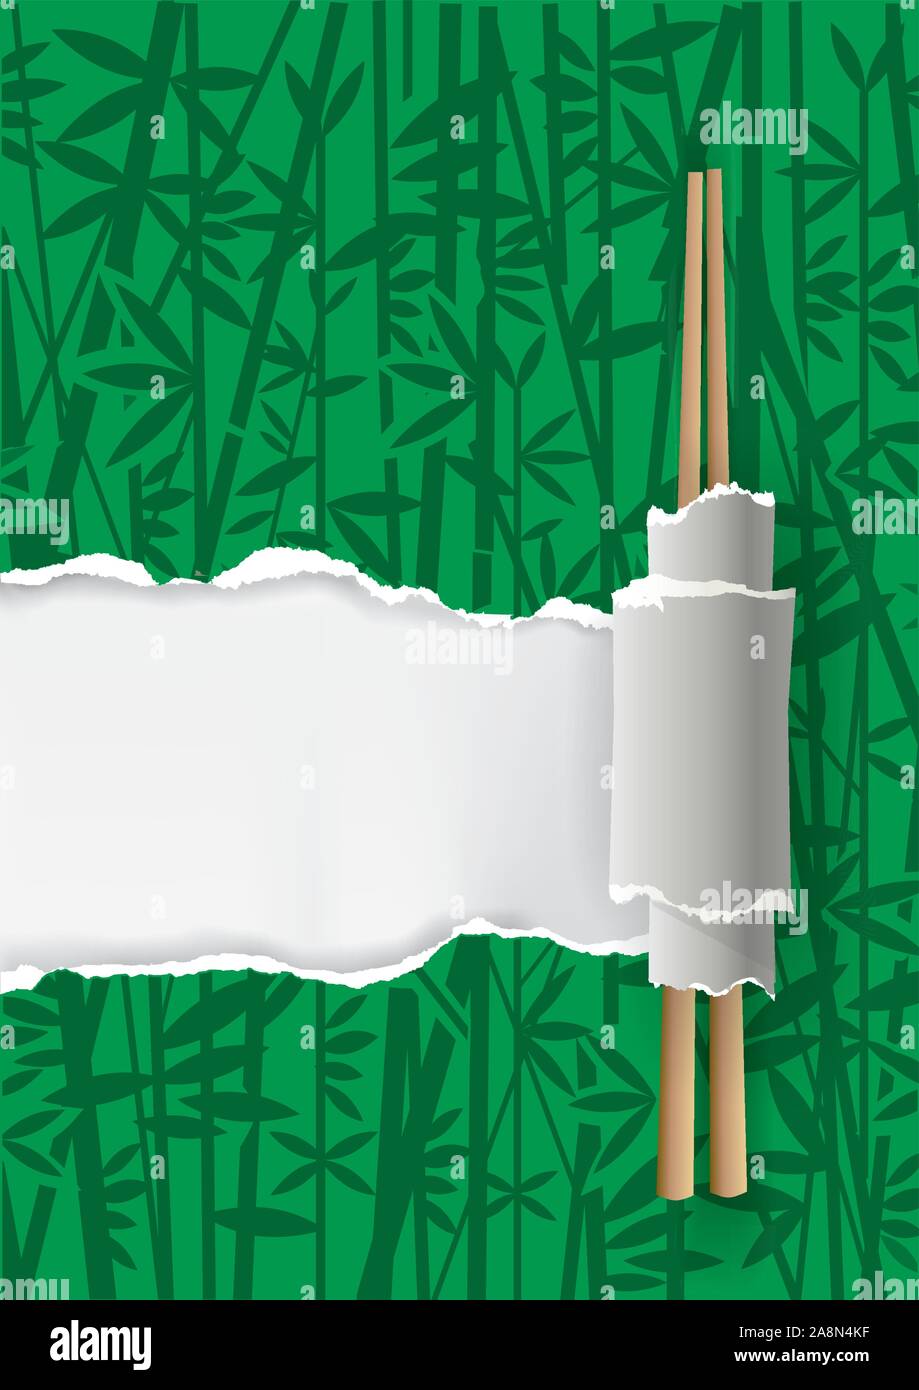 Menu restaurant la Chine, fond vert avec du bambou. Papier déchiré vert avec motif bambou et baguettes chinoises. Place pour votre texte ou image. Vec Illustration de Vecteur